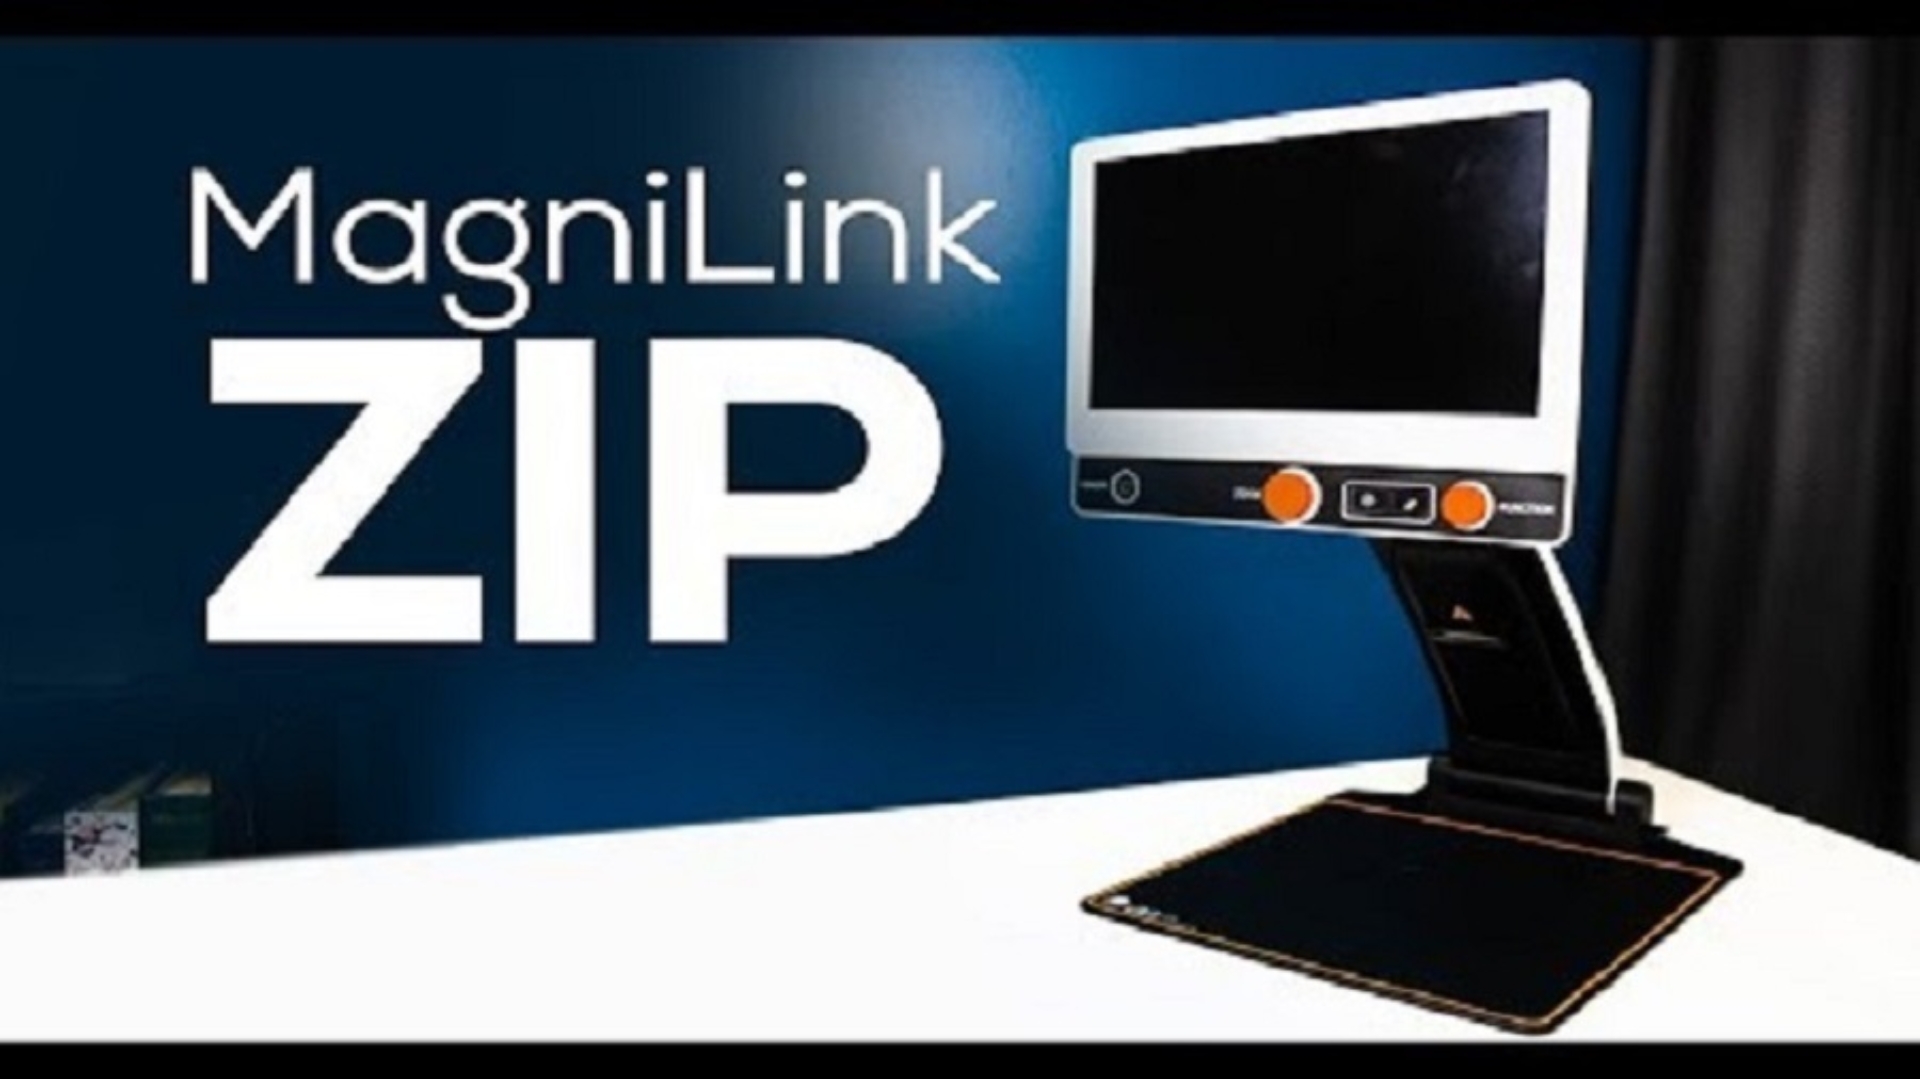 MagniLink Zip device